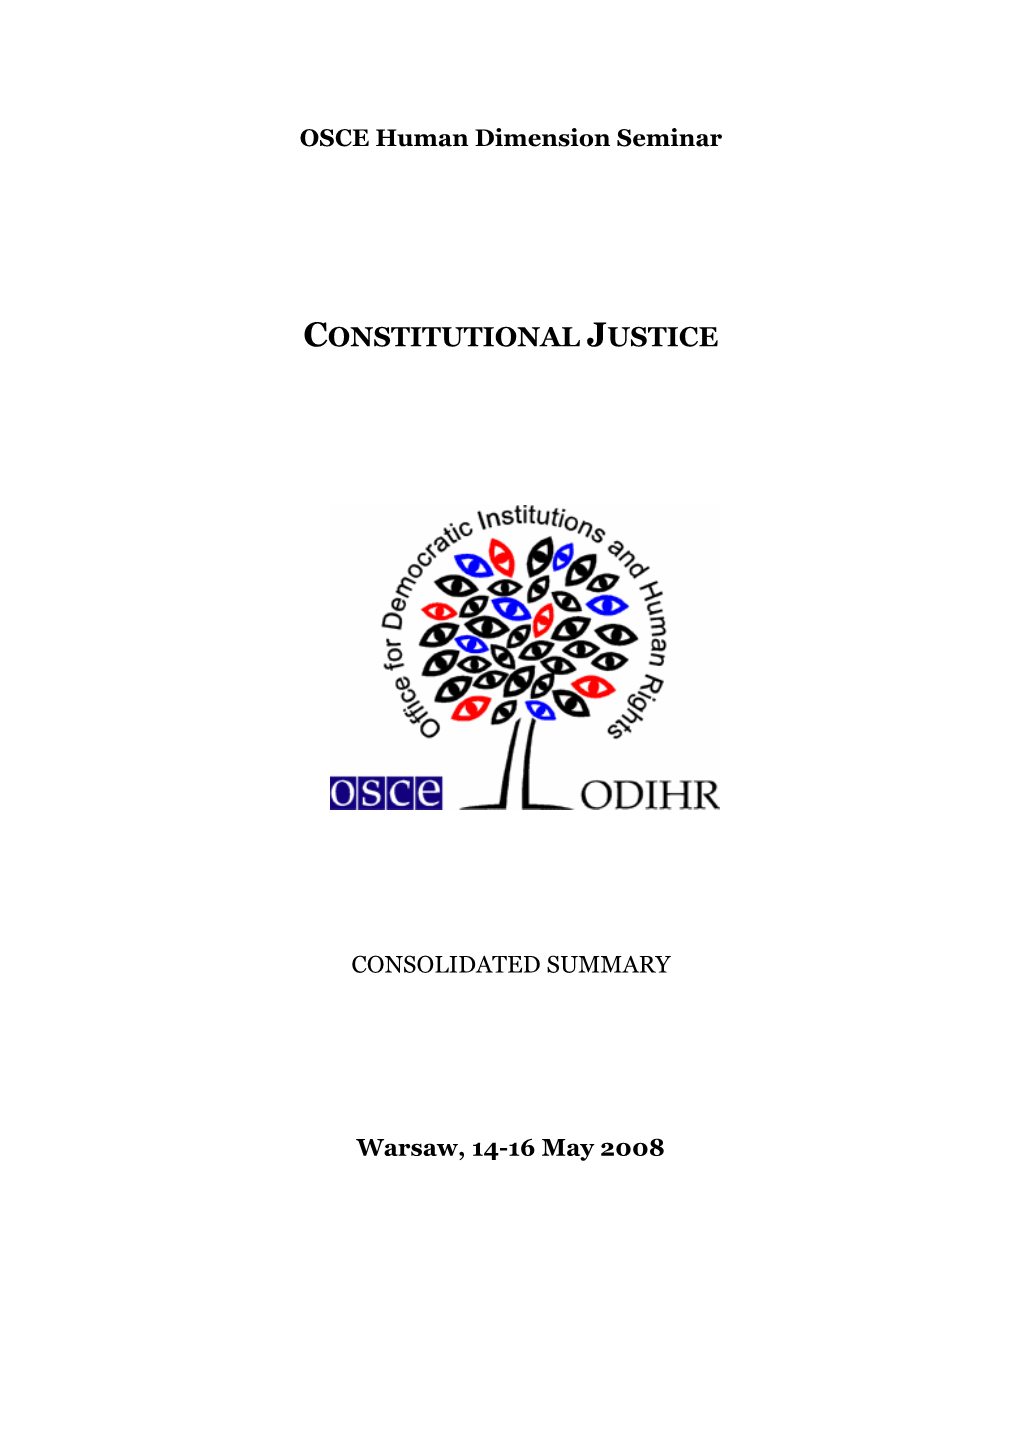 Constitutional Justice